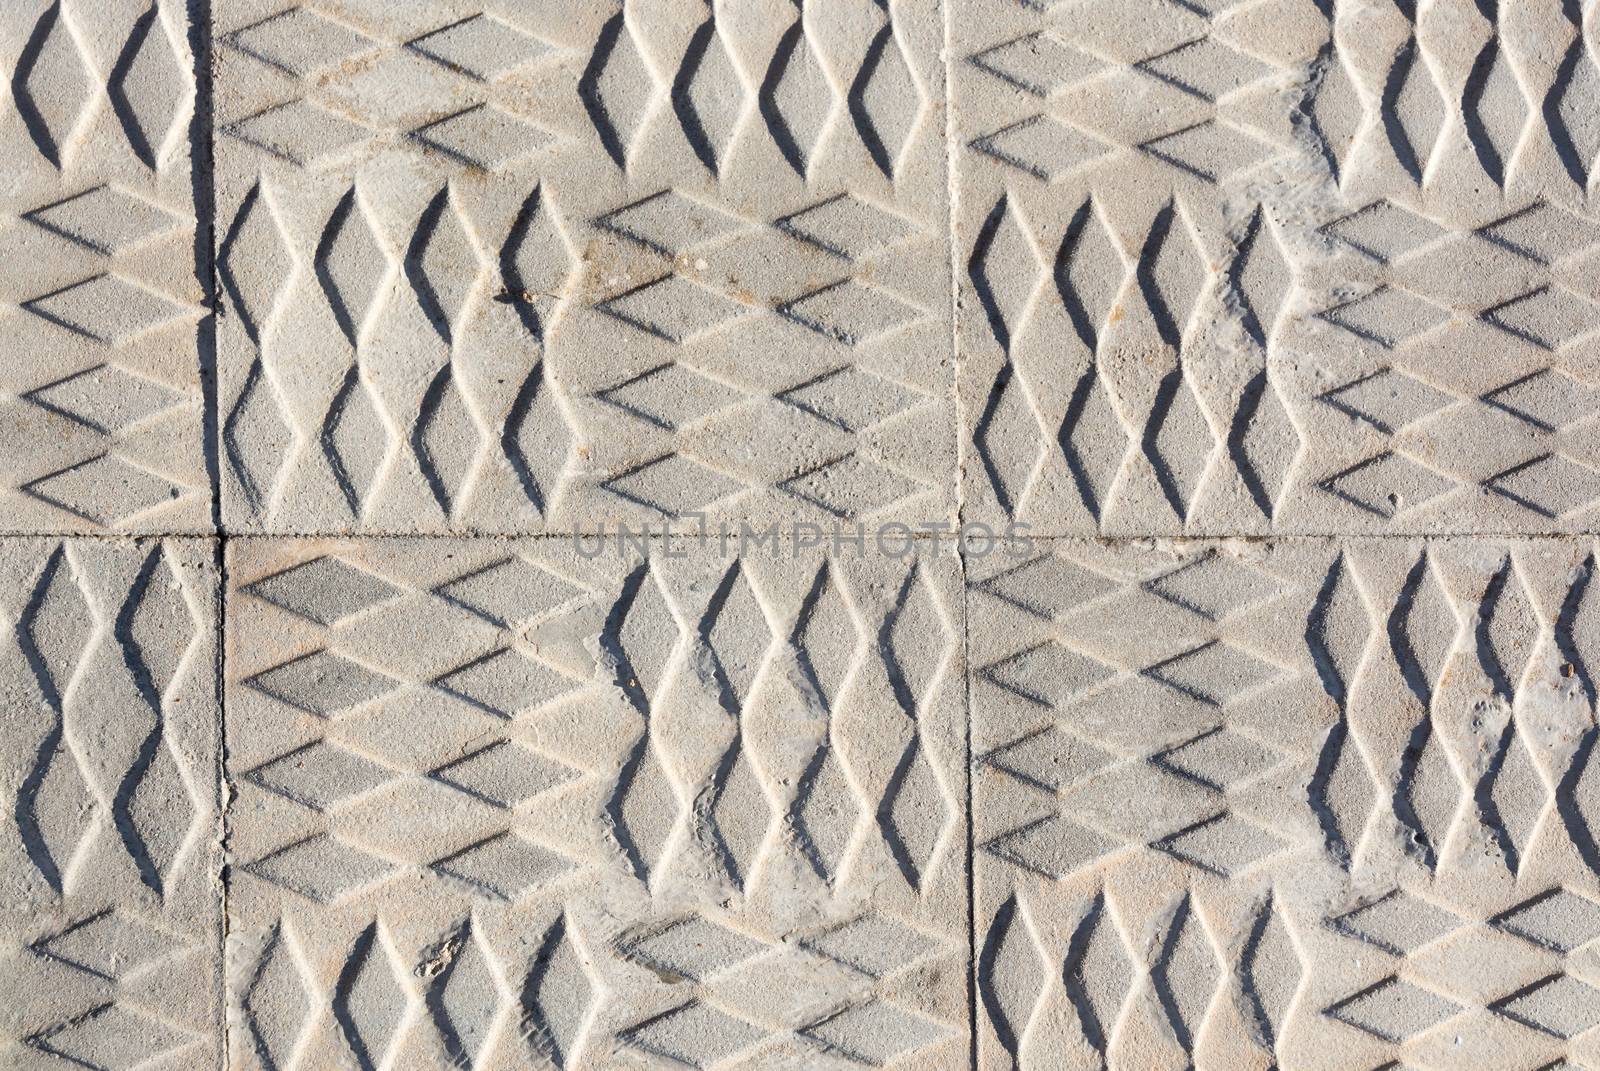 Sidewalk print pattern by ArtesiaWells